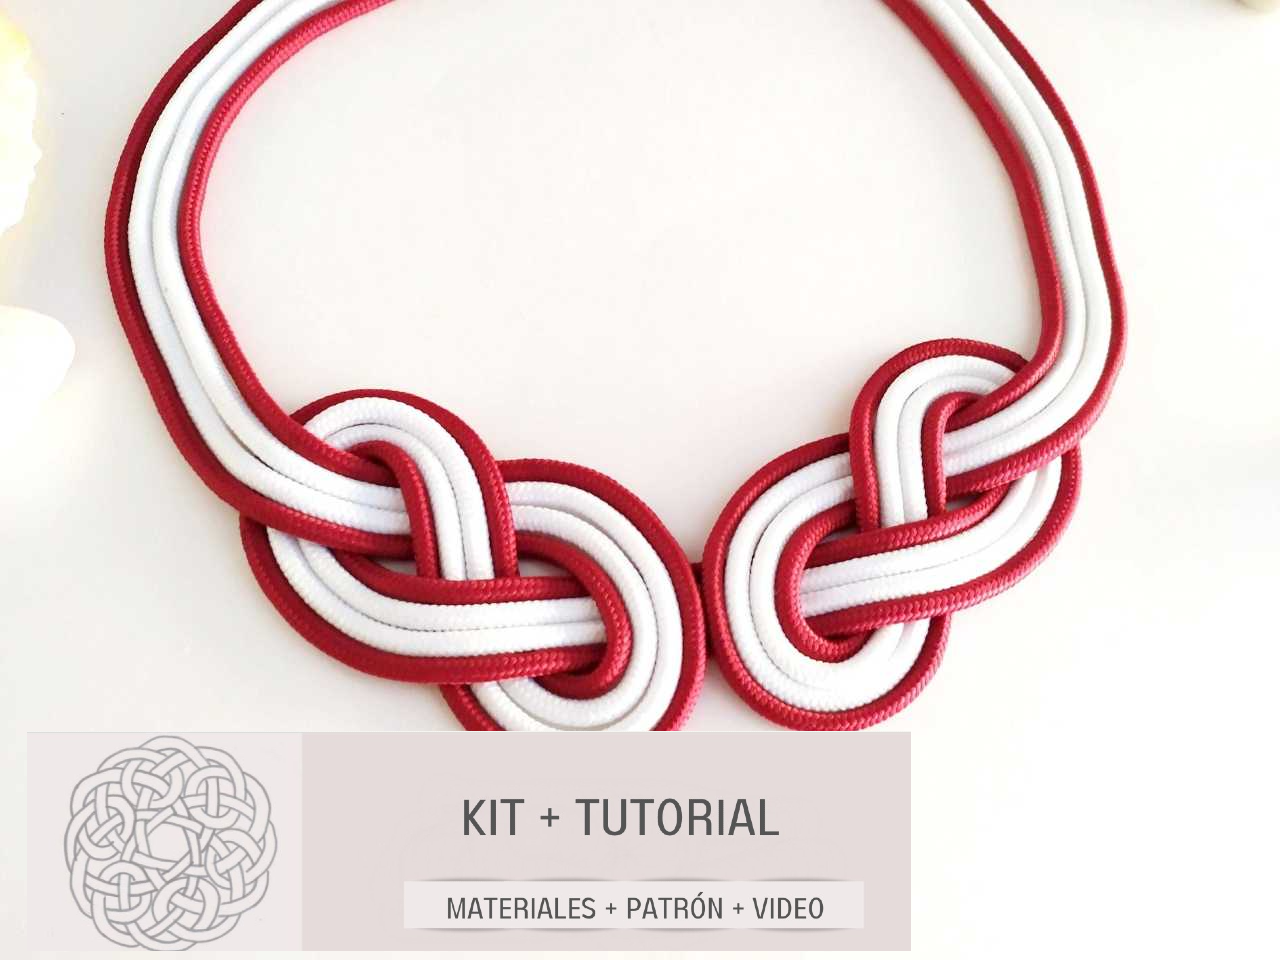 Leather and silver macramé earrings kit and tutorial – Raquel Jiménez  Artesanía